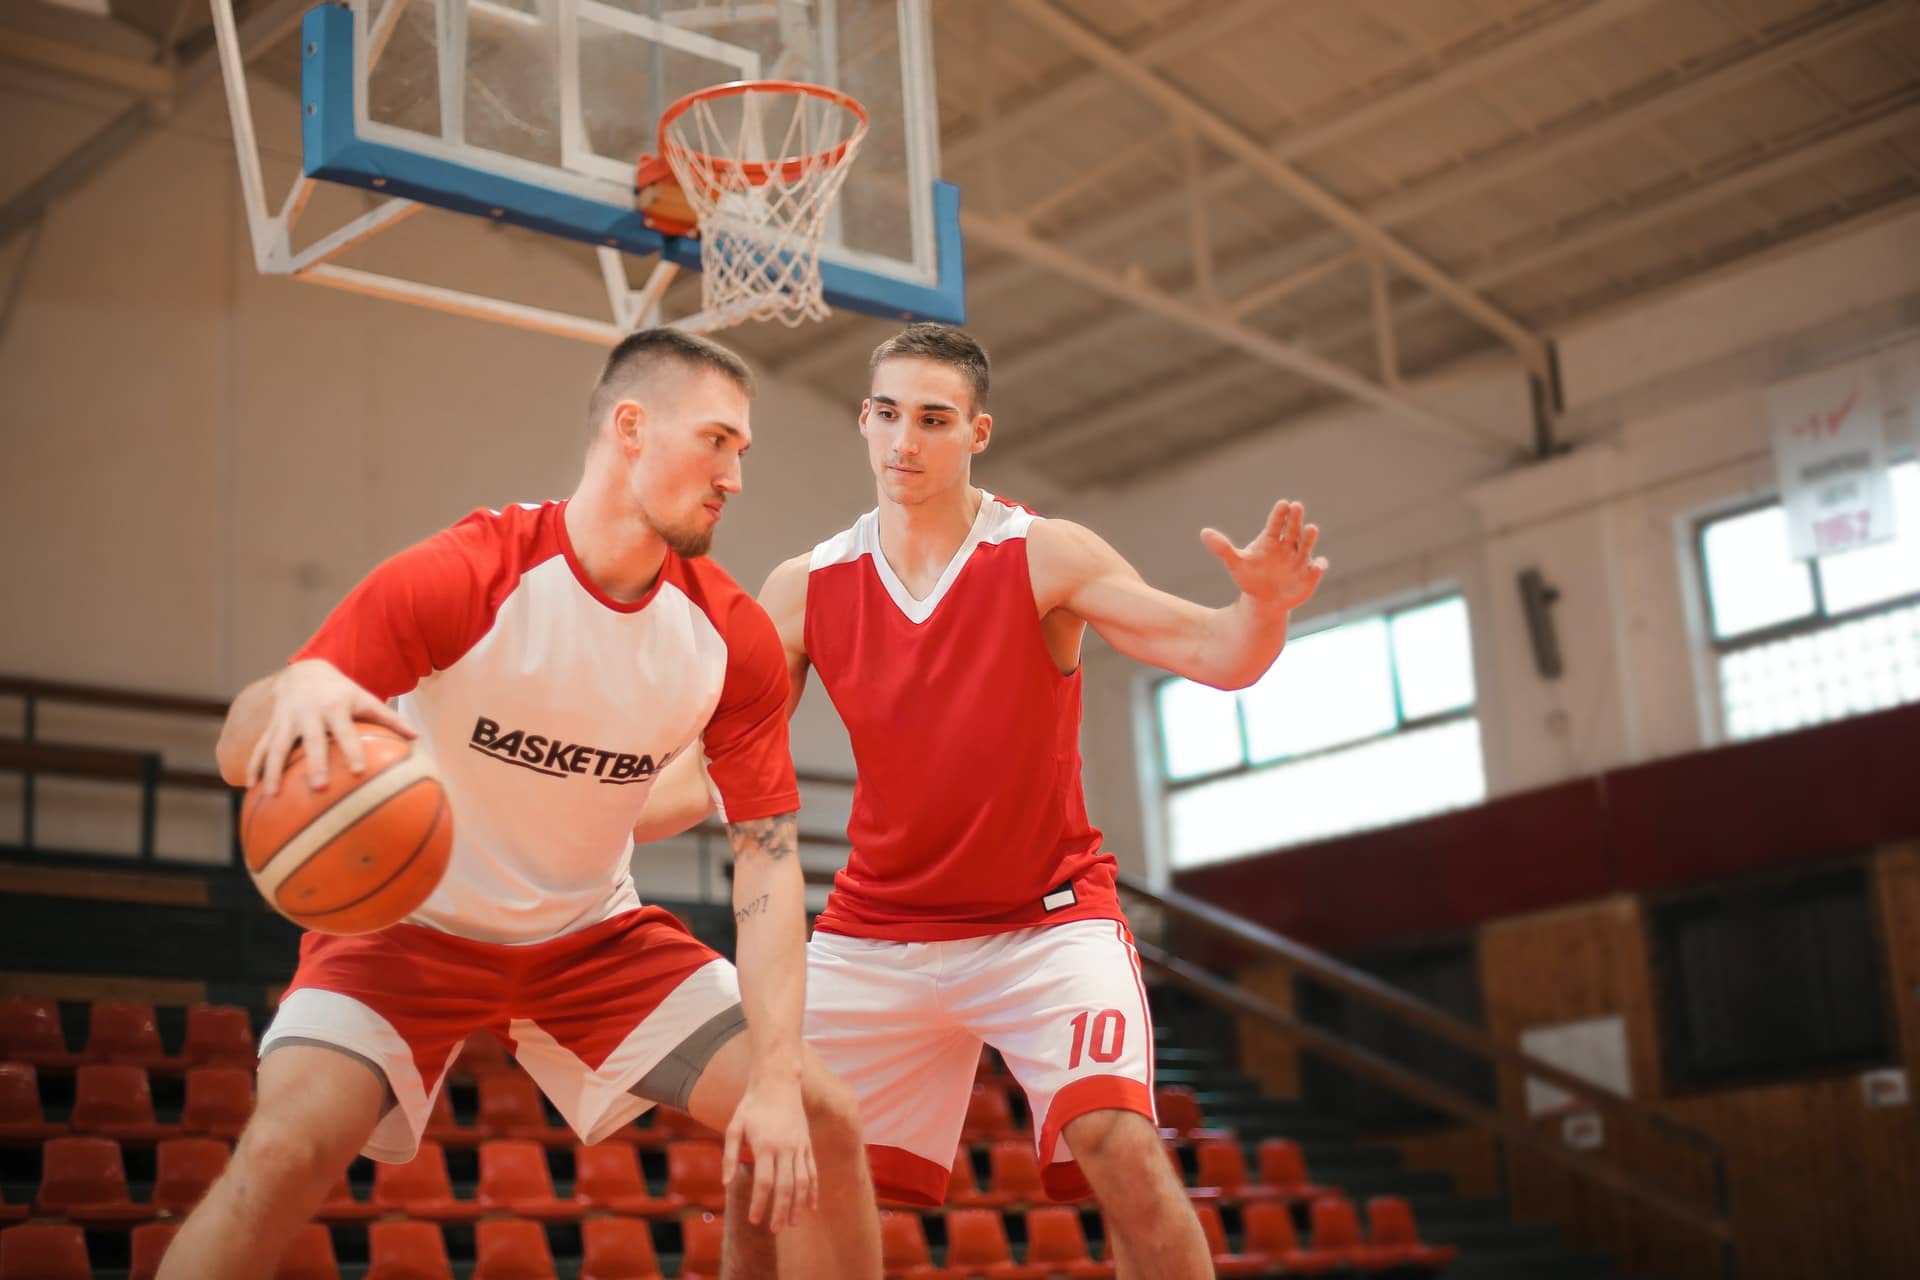 El baloncesto: características del deporte de la canasta